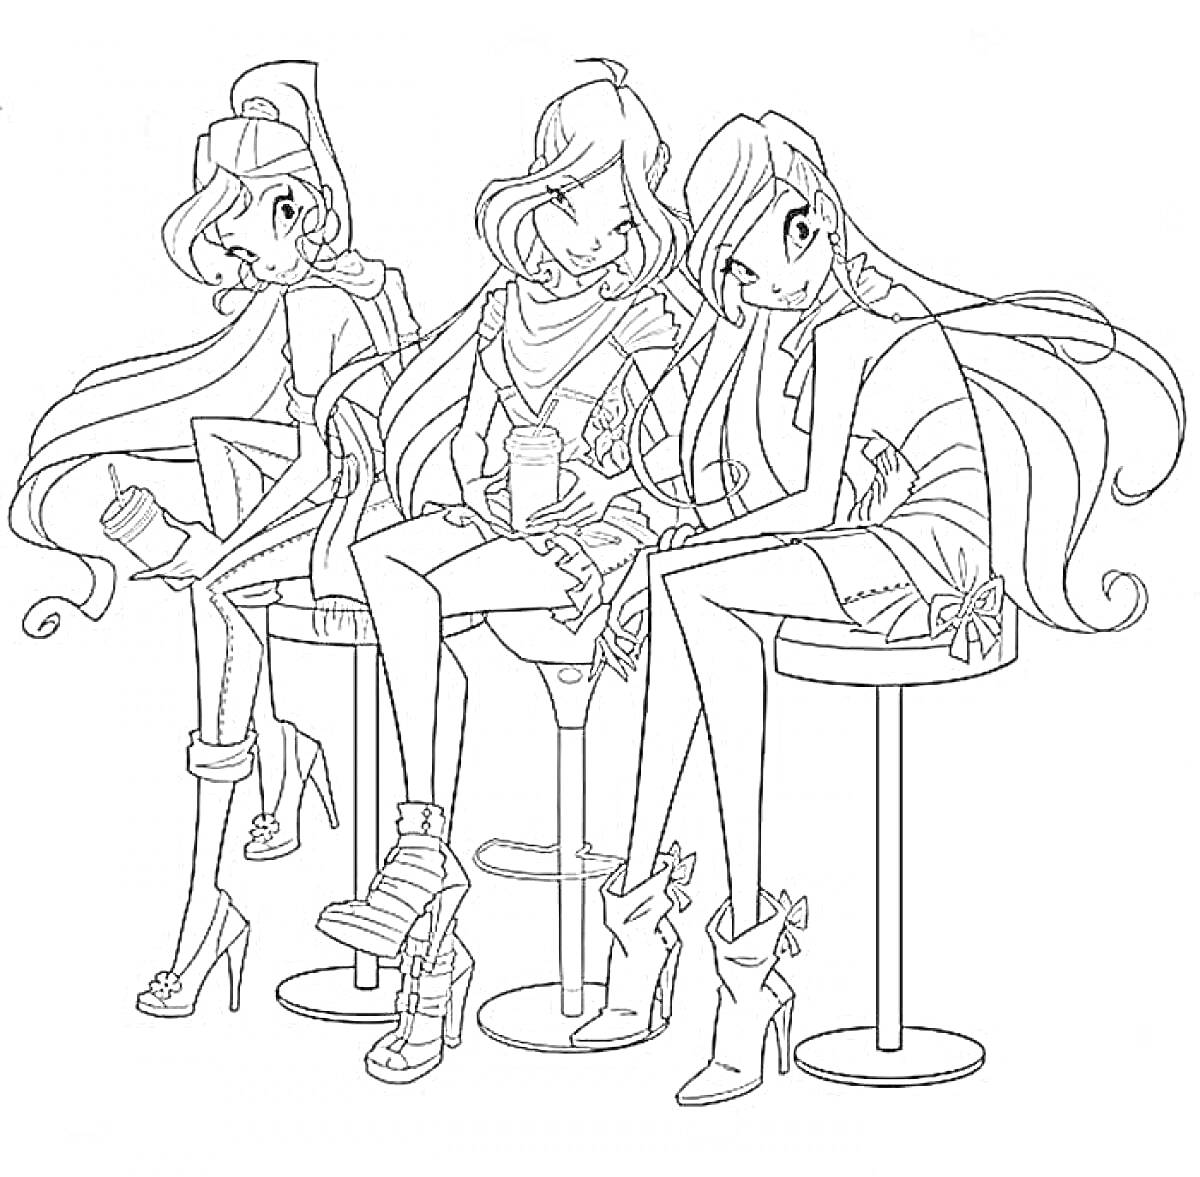 Раскраска Три девушки с длинными волосами на высоких стульях, одетые в модные наряды с высокими каблуками